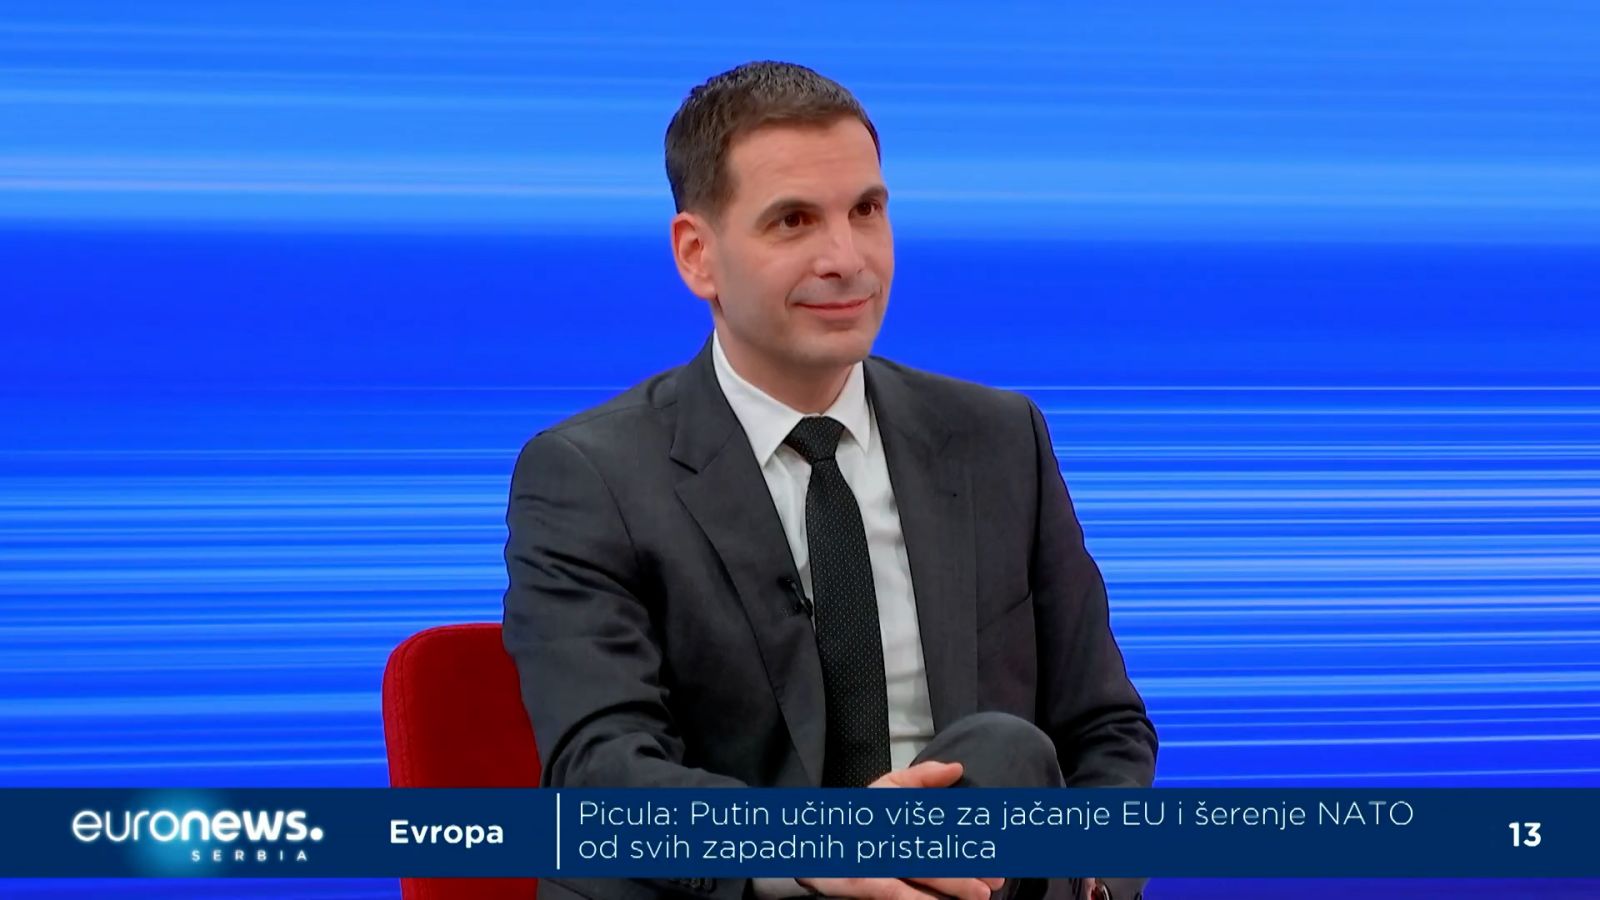 Јовановић: Србија не би требало да уведе санкције Русији, имаћемо проблем, али нека народ одлучи 